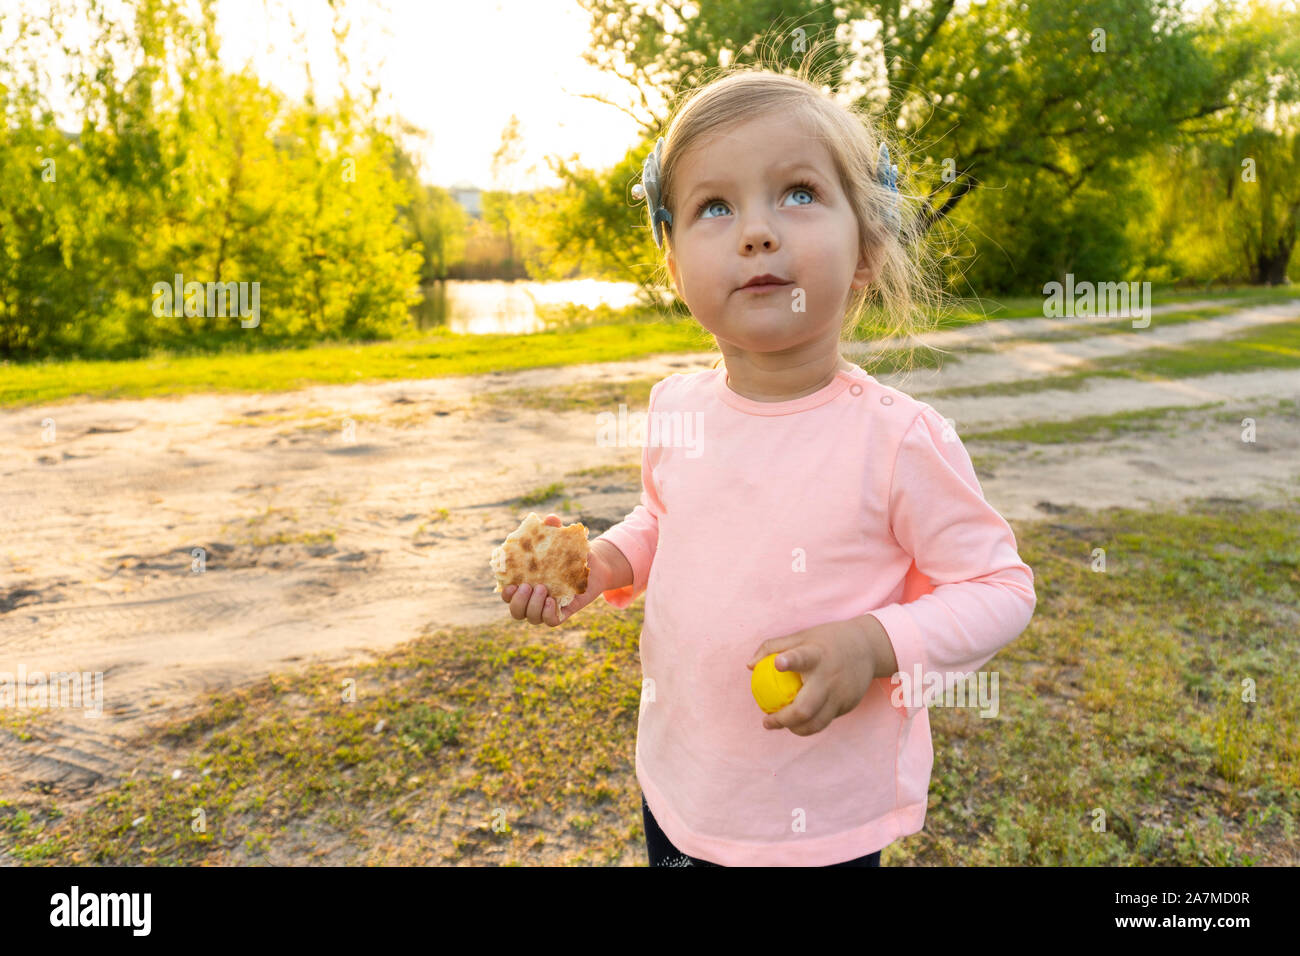 Kleines Mädchen mit lustigen emotionale Gesicht mit Brot in Händen Stockfoto